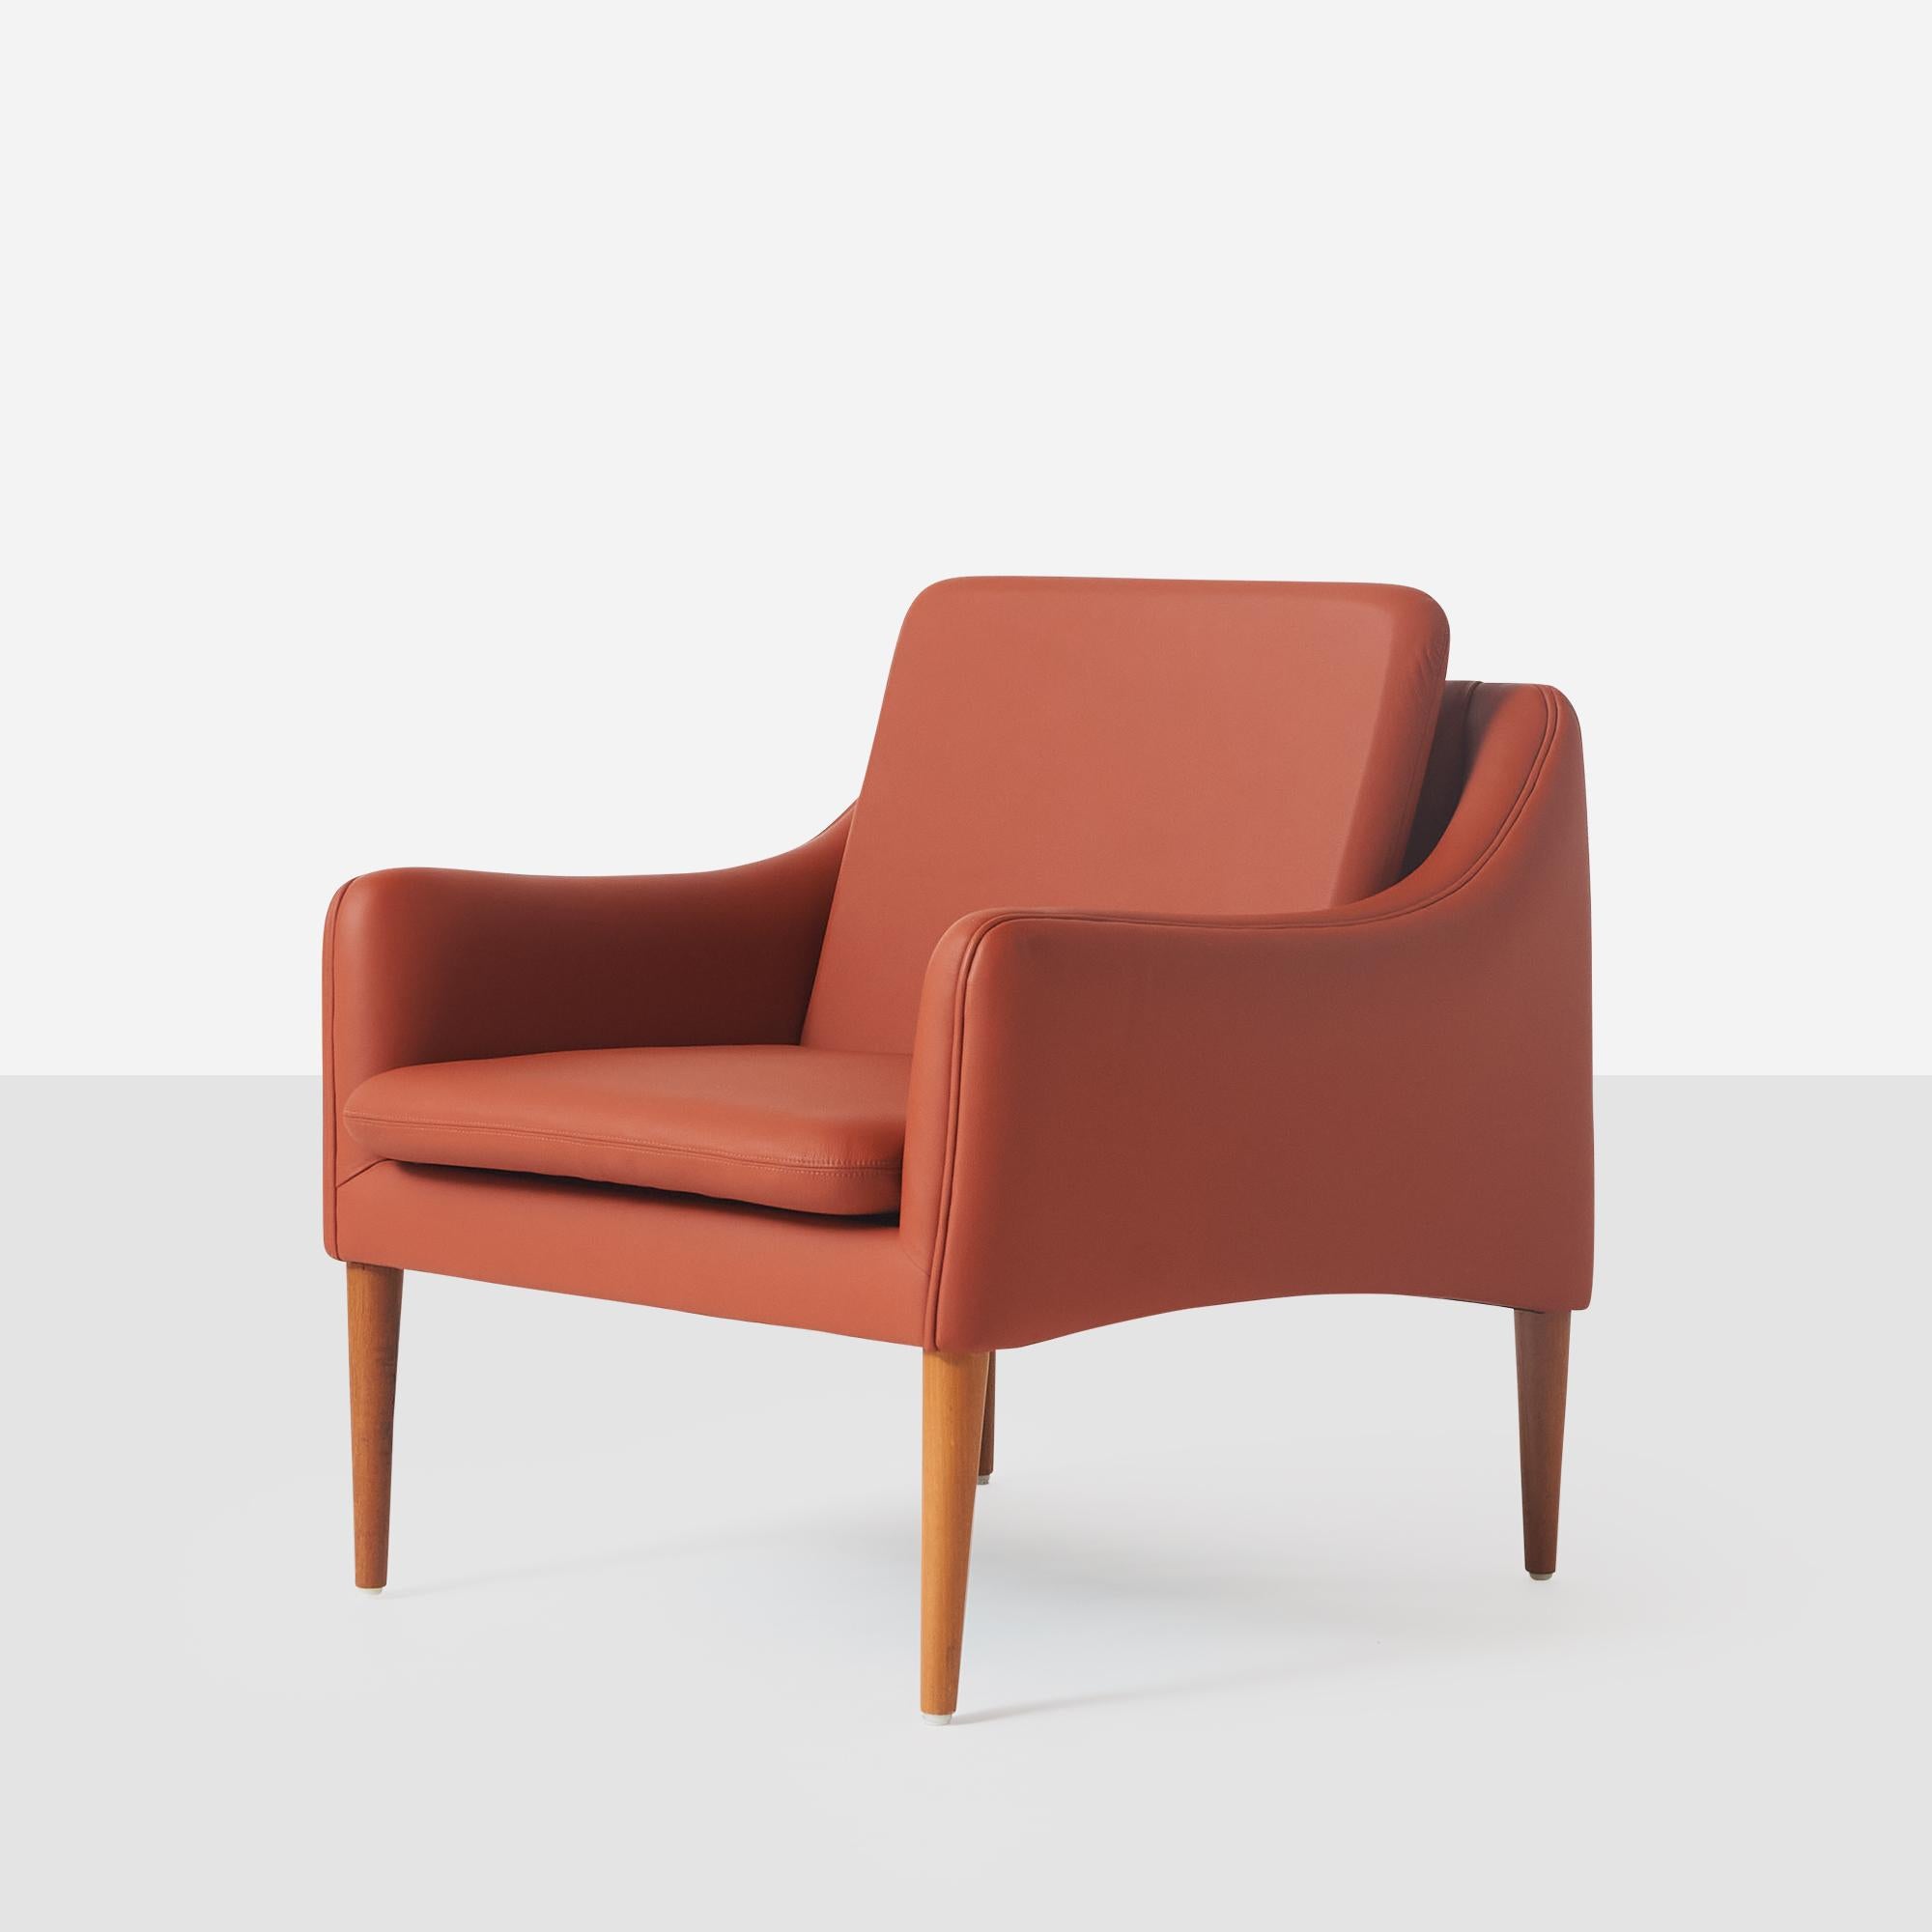 Fauteuil club de la série 800 de Hans Olsen. La chaise a été recouverte d'un cuir de couleur kaki.